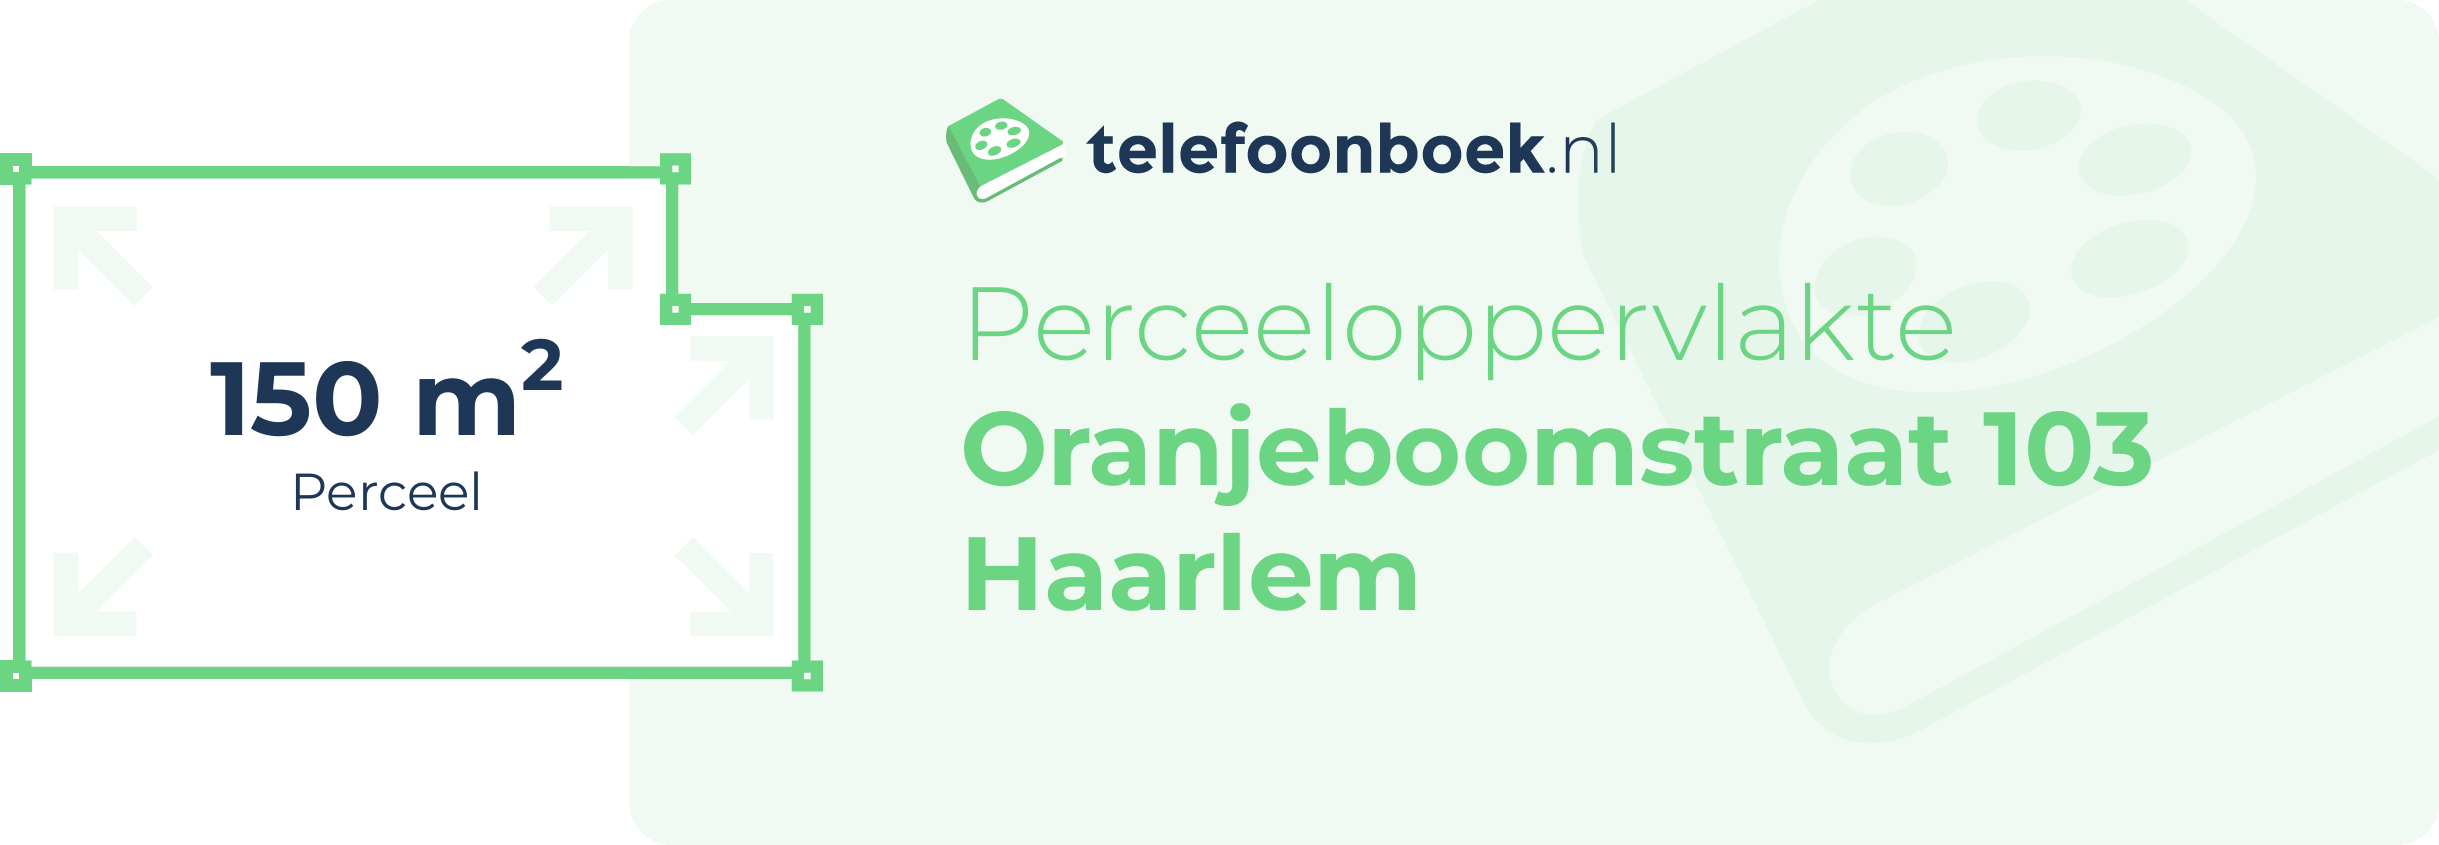 Perceeloppervlakte Oranjeboomstraat 103 Haarlem